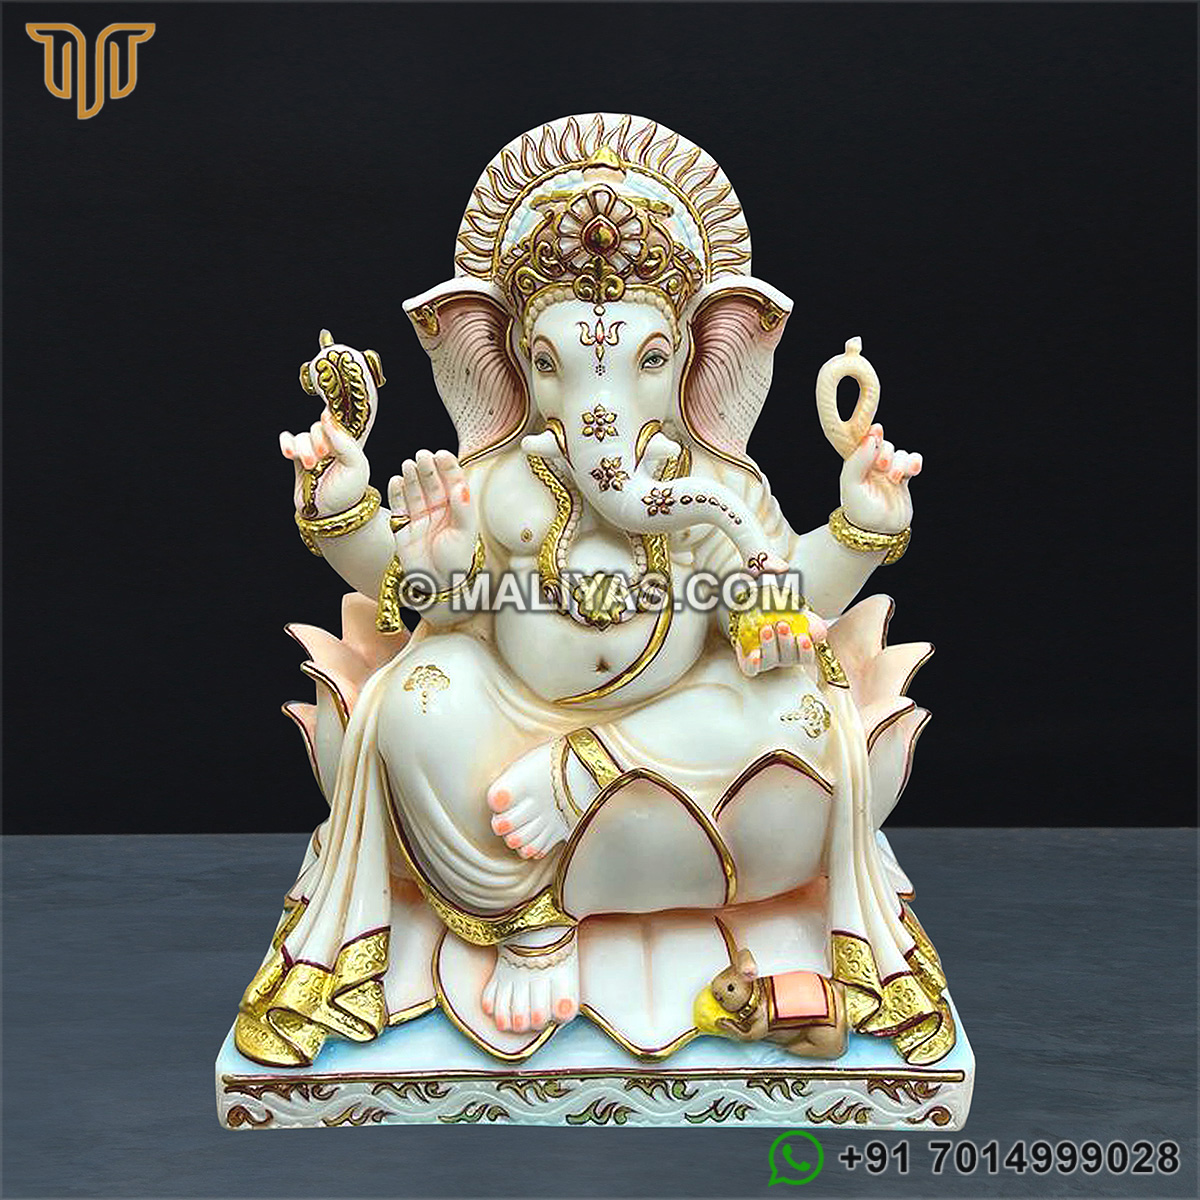 Cultured Marble Dust Lord Ganesha Idol